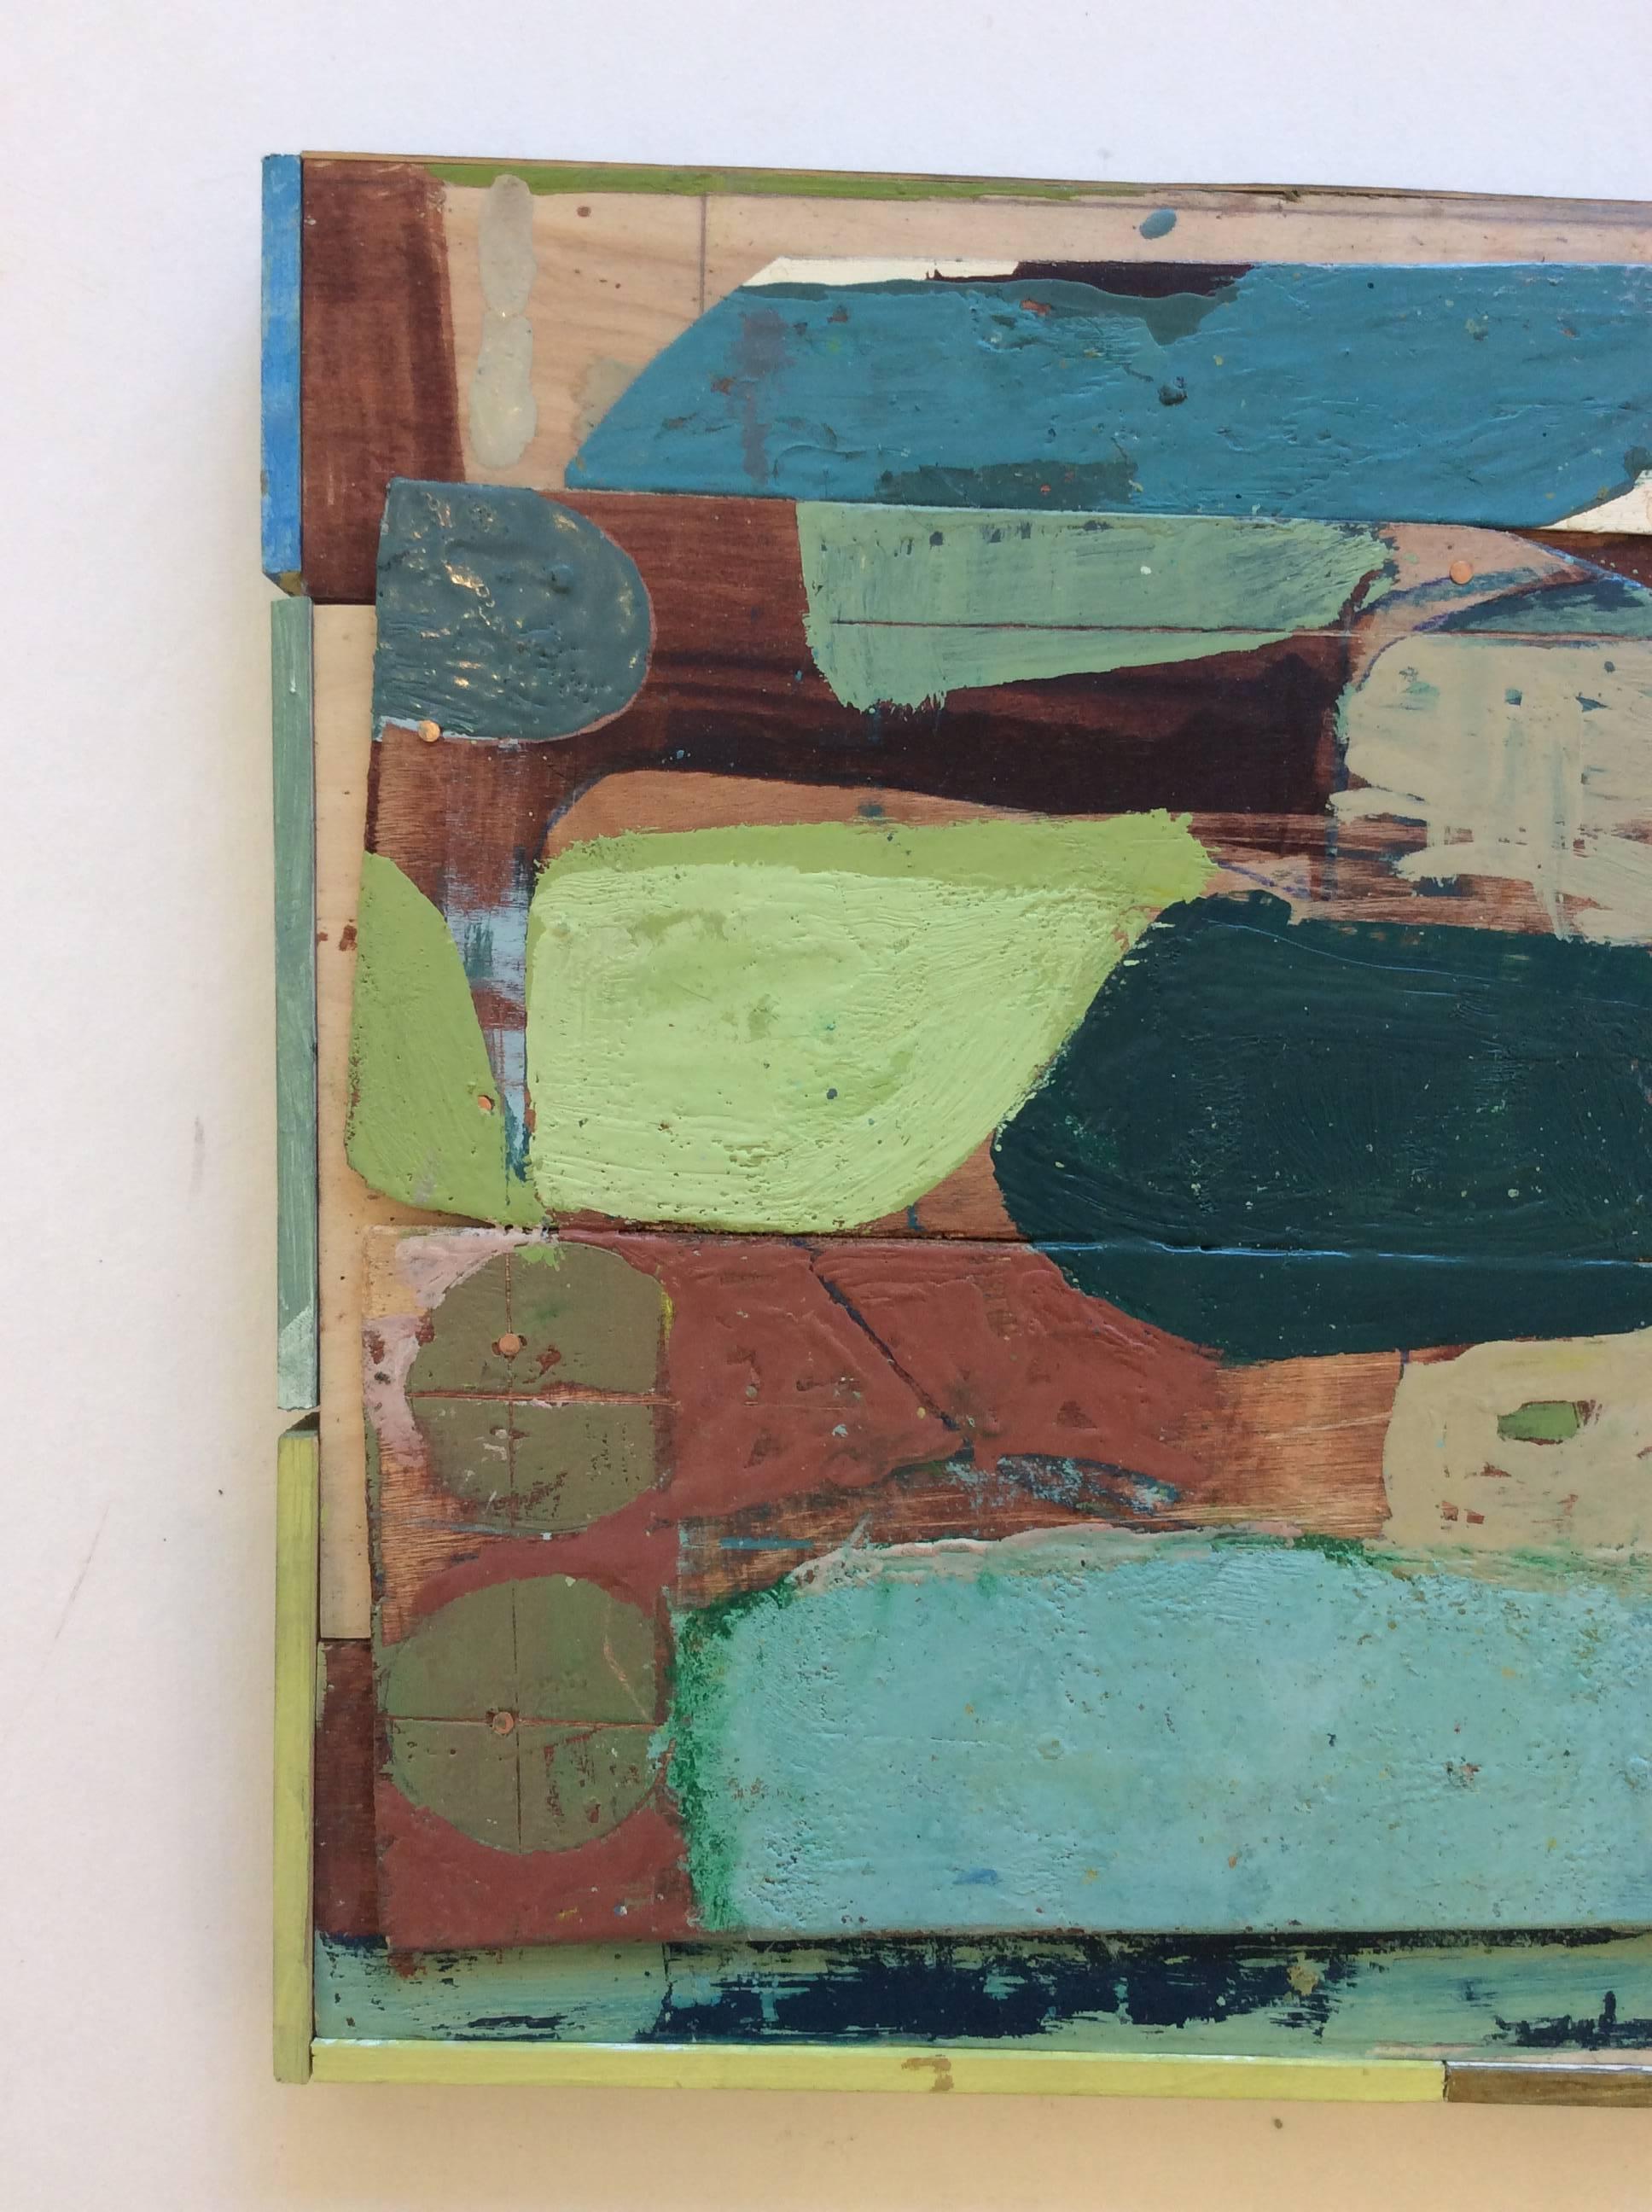 Peinture abstraite dans les tons verts et bleus
encaustique sur panneau de bois
12 x 12 x 2.5 pouces

James O'Shea a été loué pendant des années pour son travail de coloriste, produisant couche après couche de couleur transparente pour créer des